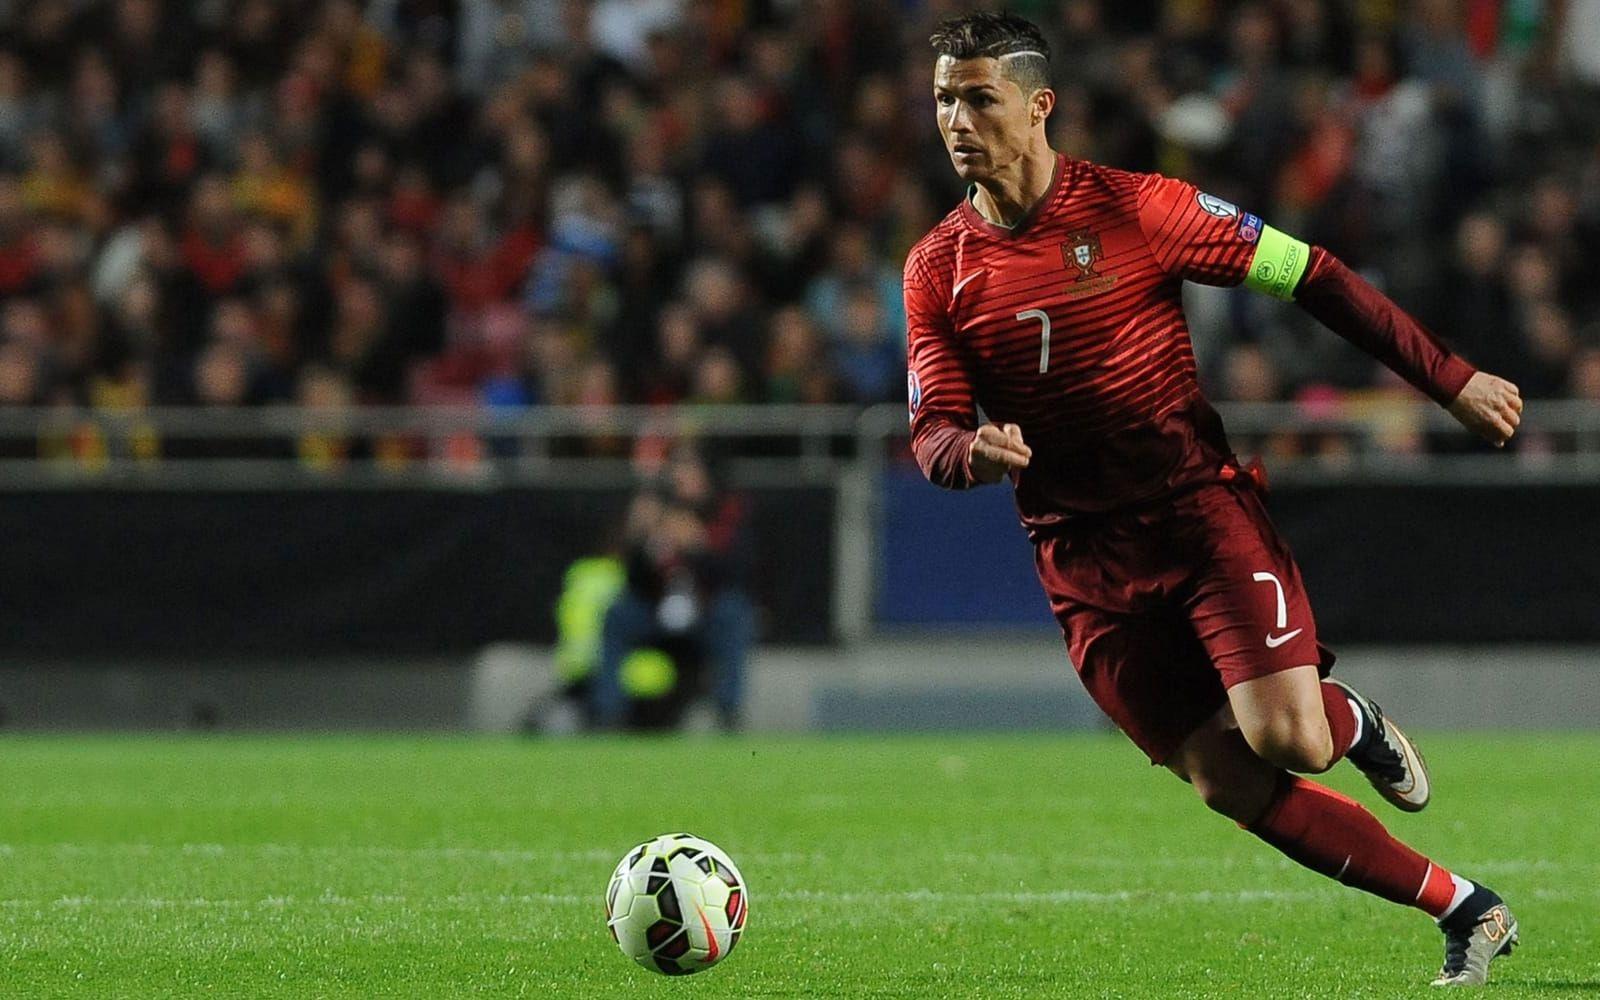 1. Cristiano Ronaldo, Portugal. Portugisen har vunnit allt som går att vinna i Real Madrid, och har gjort mer än ett mål per match i den spanska storklubben. Mästerskapsdebuterade som 18-åring i EM-2004, men än så länge har han inte lyckats vinna någon titel med Portugal. Foto: Bildbyrån